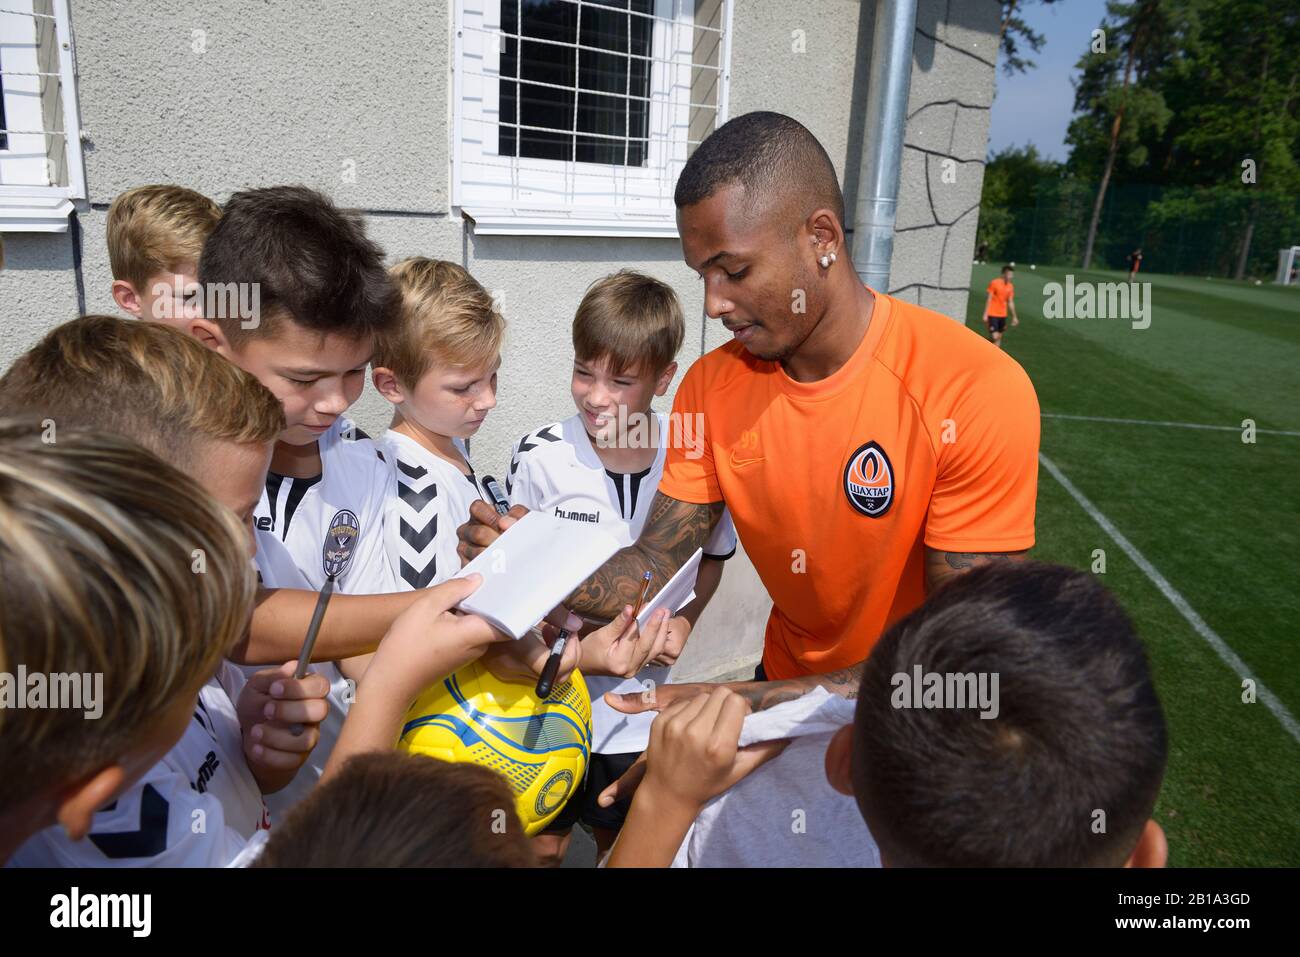 Fußballspieler Fernando, Shakhtar-Fußballmannschaft, signiert Autogramme für Kinder. August 2019. Kiew, Ukraine Stockfoto